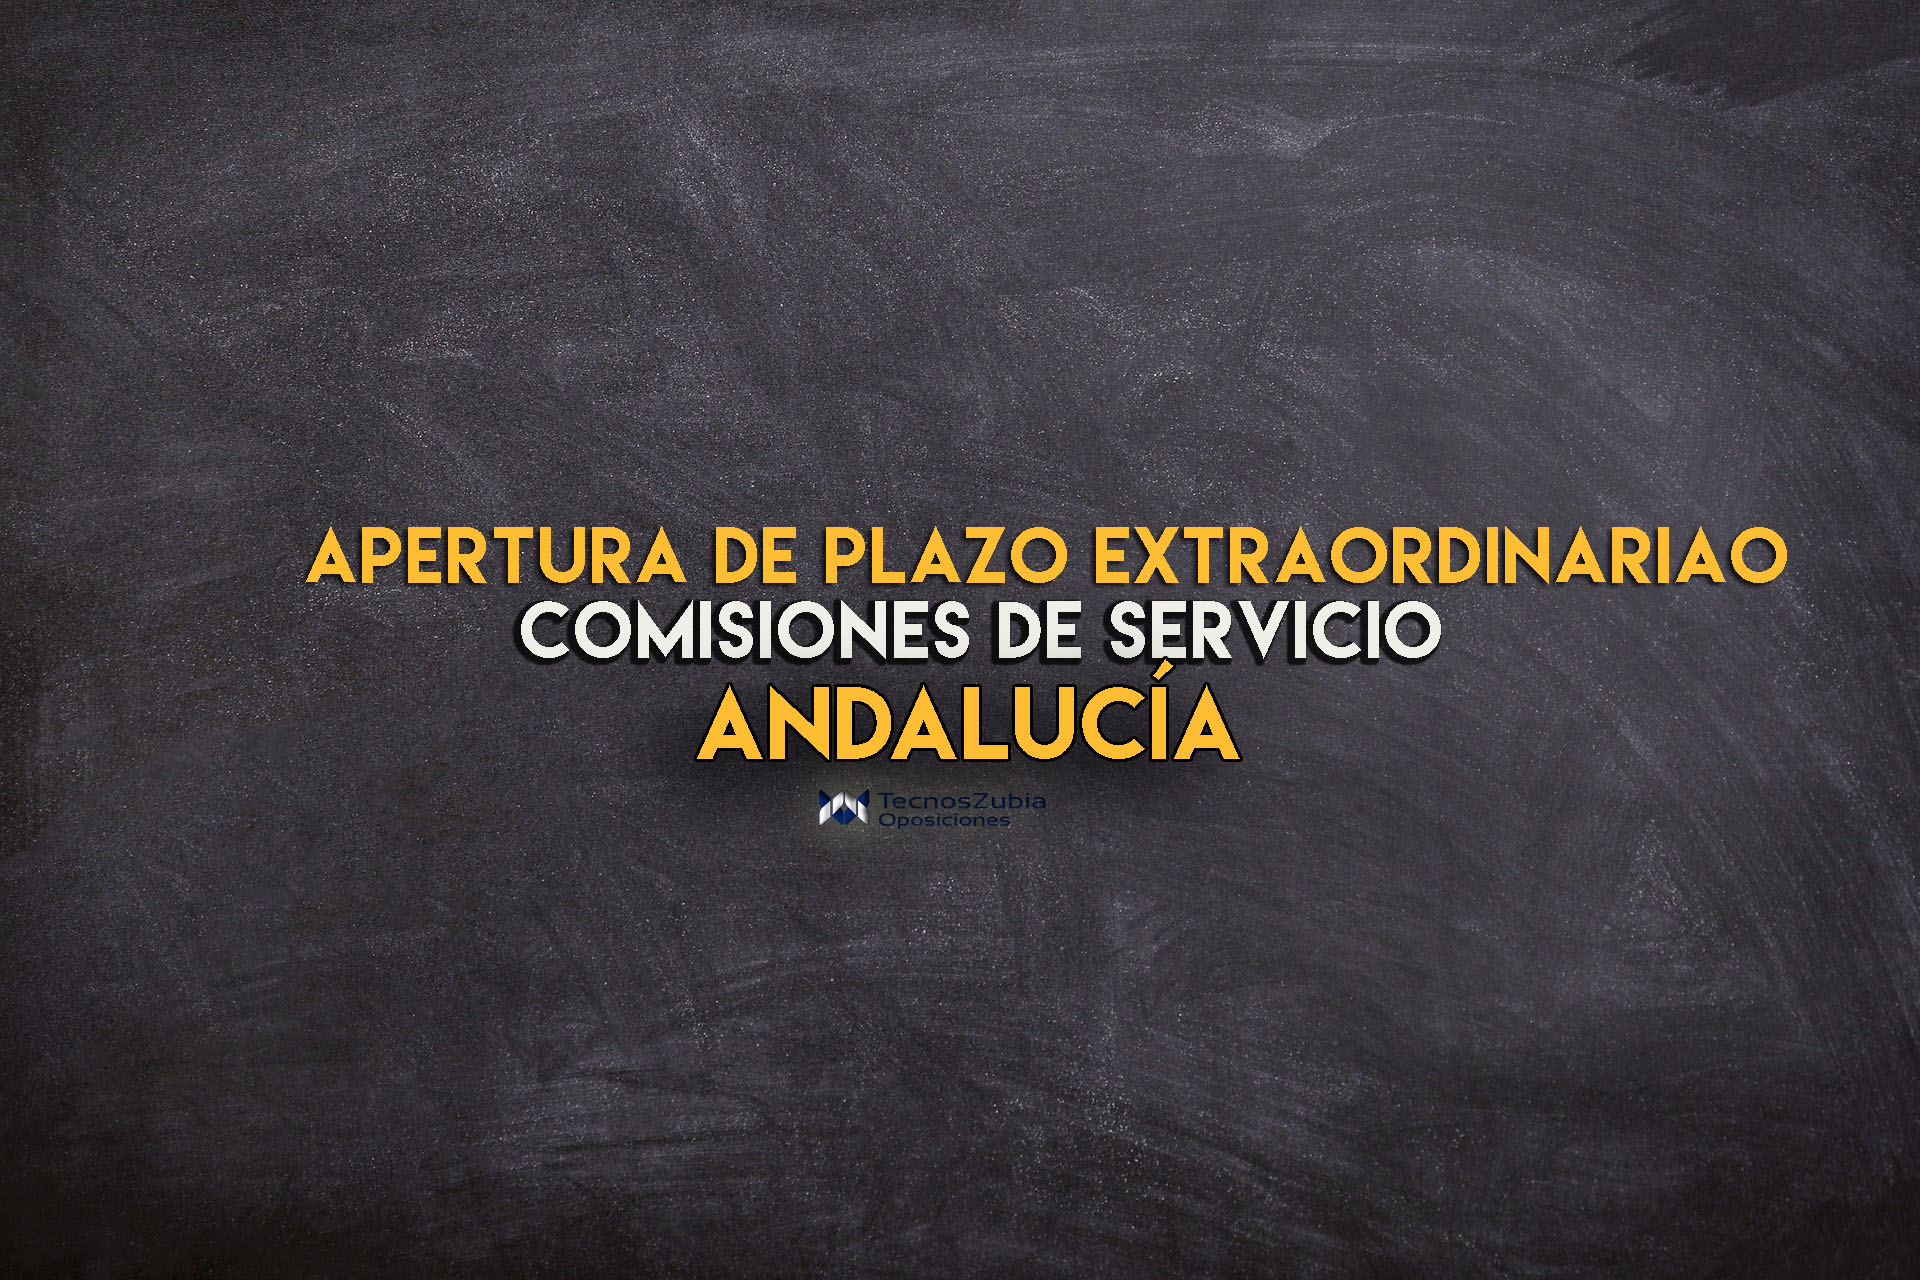 Apertura de plazo extraordinario comisiones de servicio Andalucía